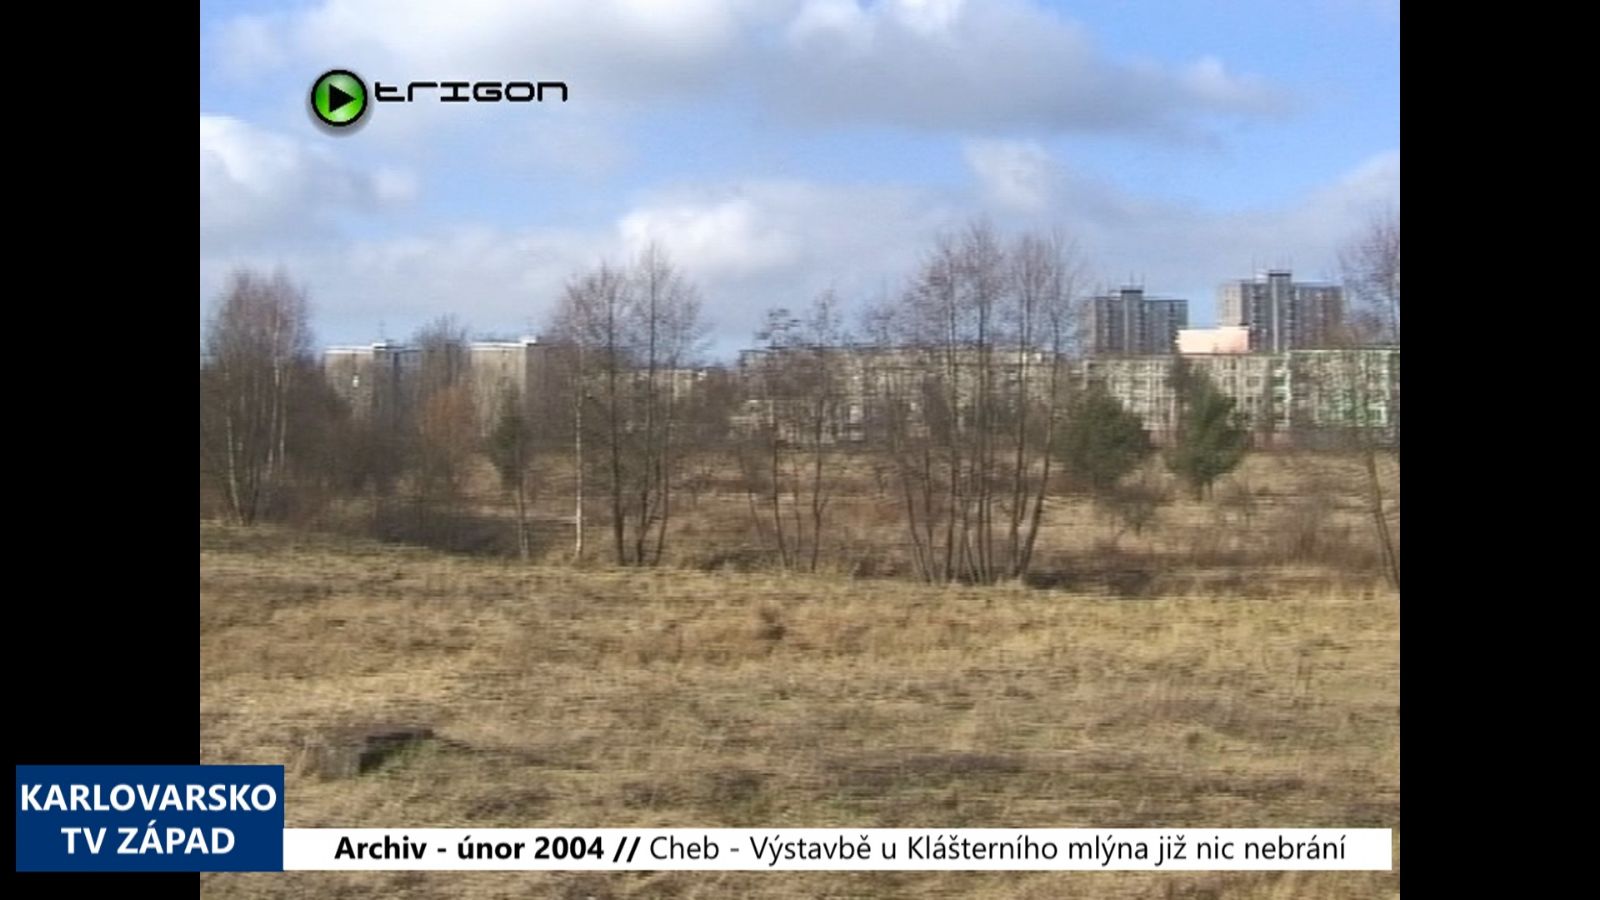 2004 – Cheb: Výstavbě u Klášterního mlýna již nic nebrání (TV Západ)